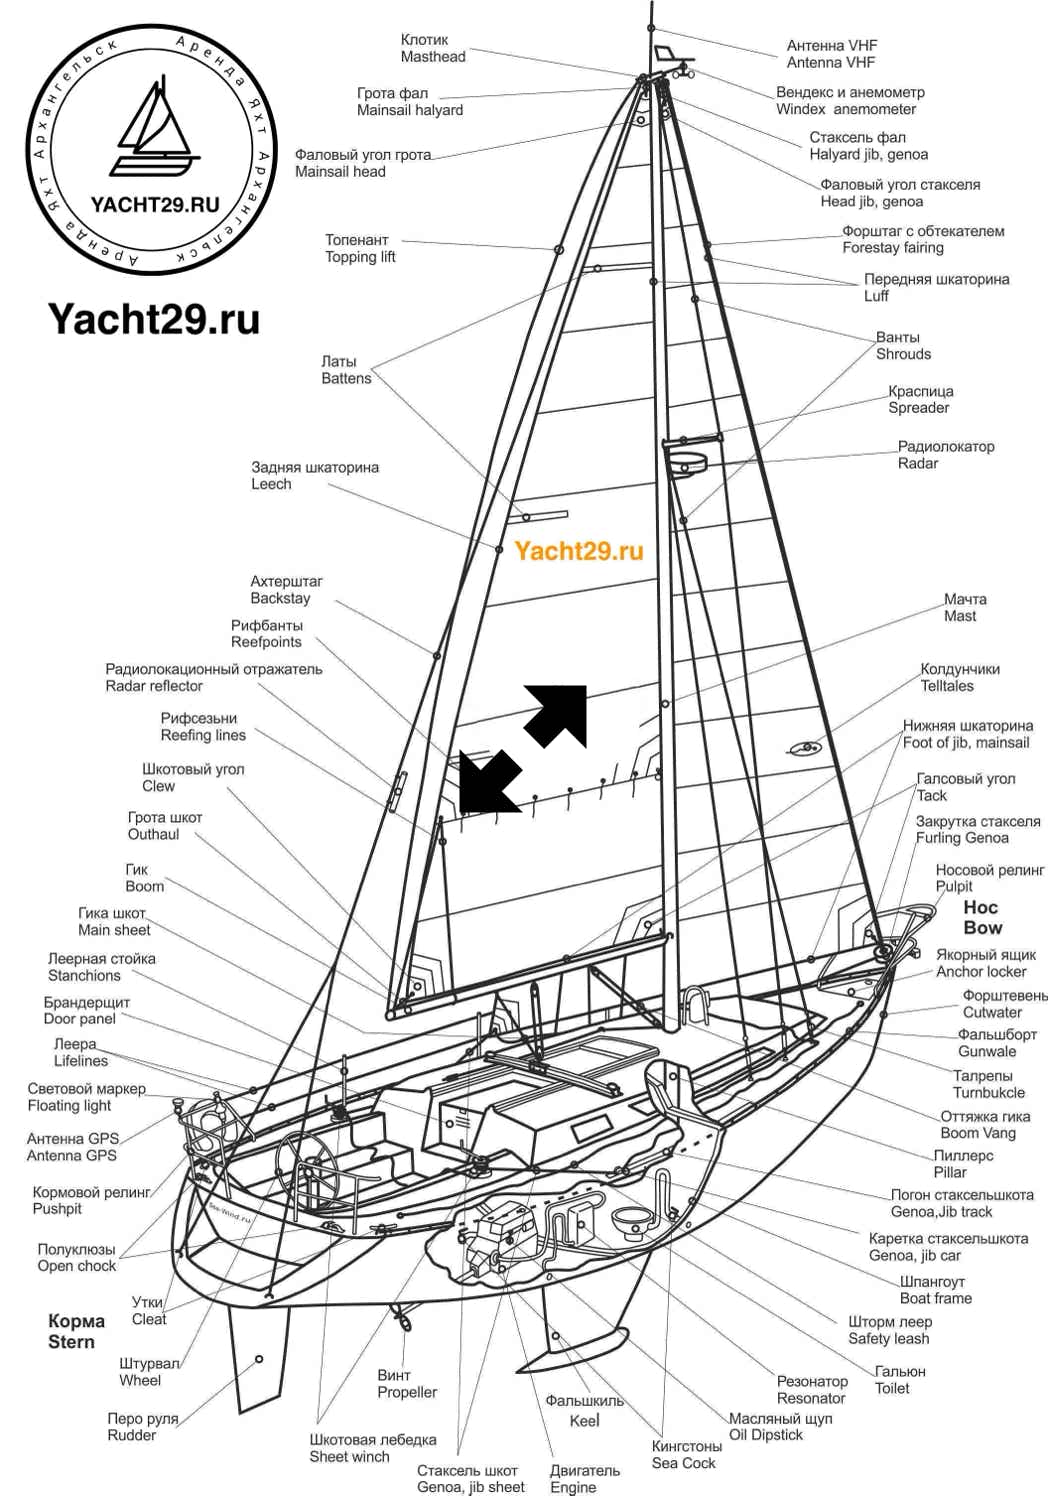 Наглядная схема устройства парусной яхты с названиями деталей